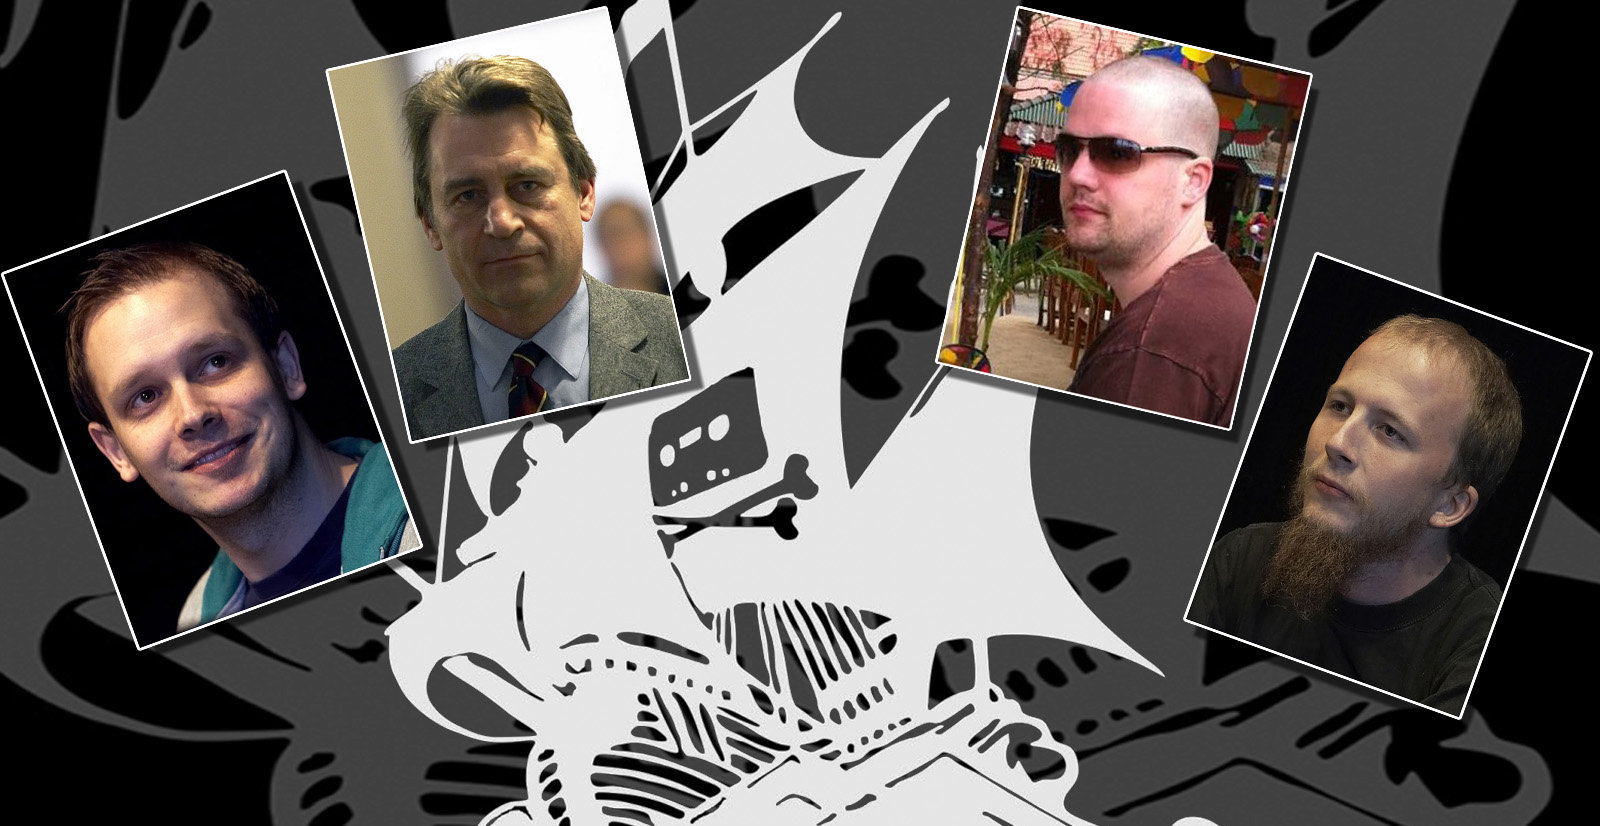 De fire Pirate Bay-gründerne har levd høyst forskjellige liv etter at dommen mot dem falt i 2009. Fra venstre Peter Sunde, Carl Lundström, Fredrik Neij og Gottfrid Svartholm Warg.